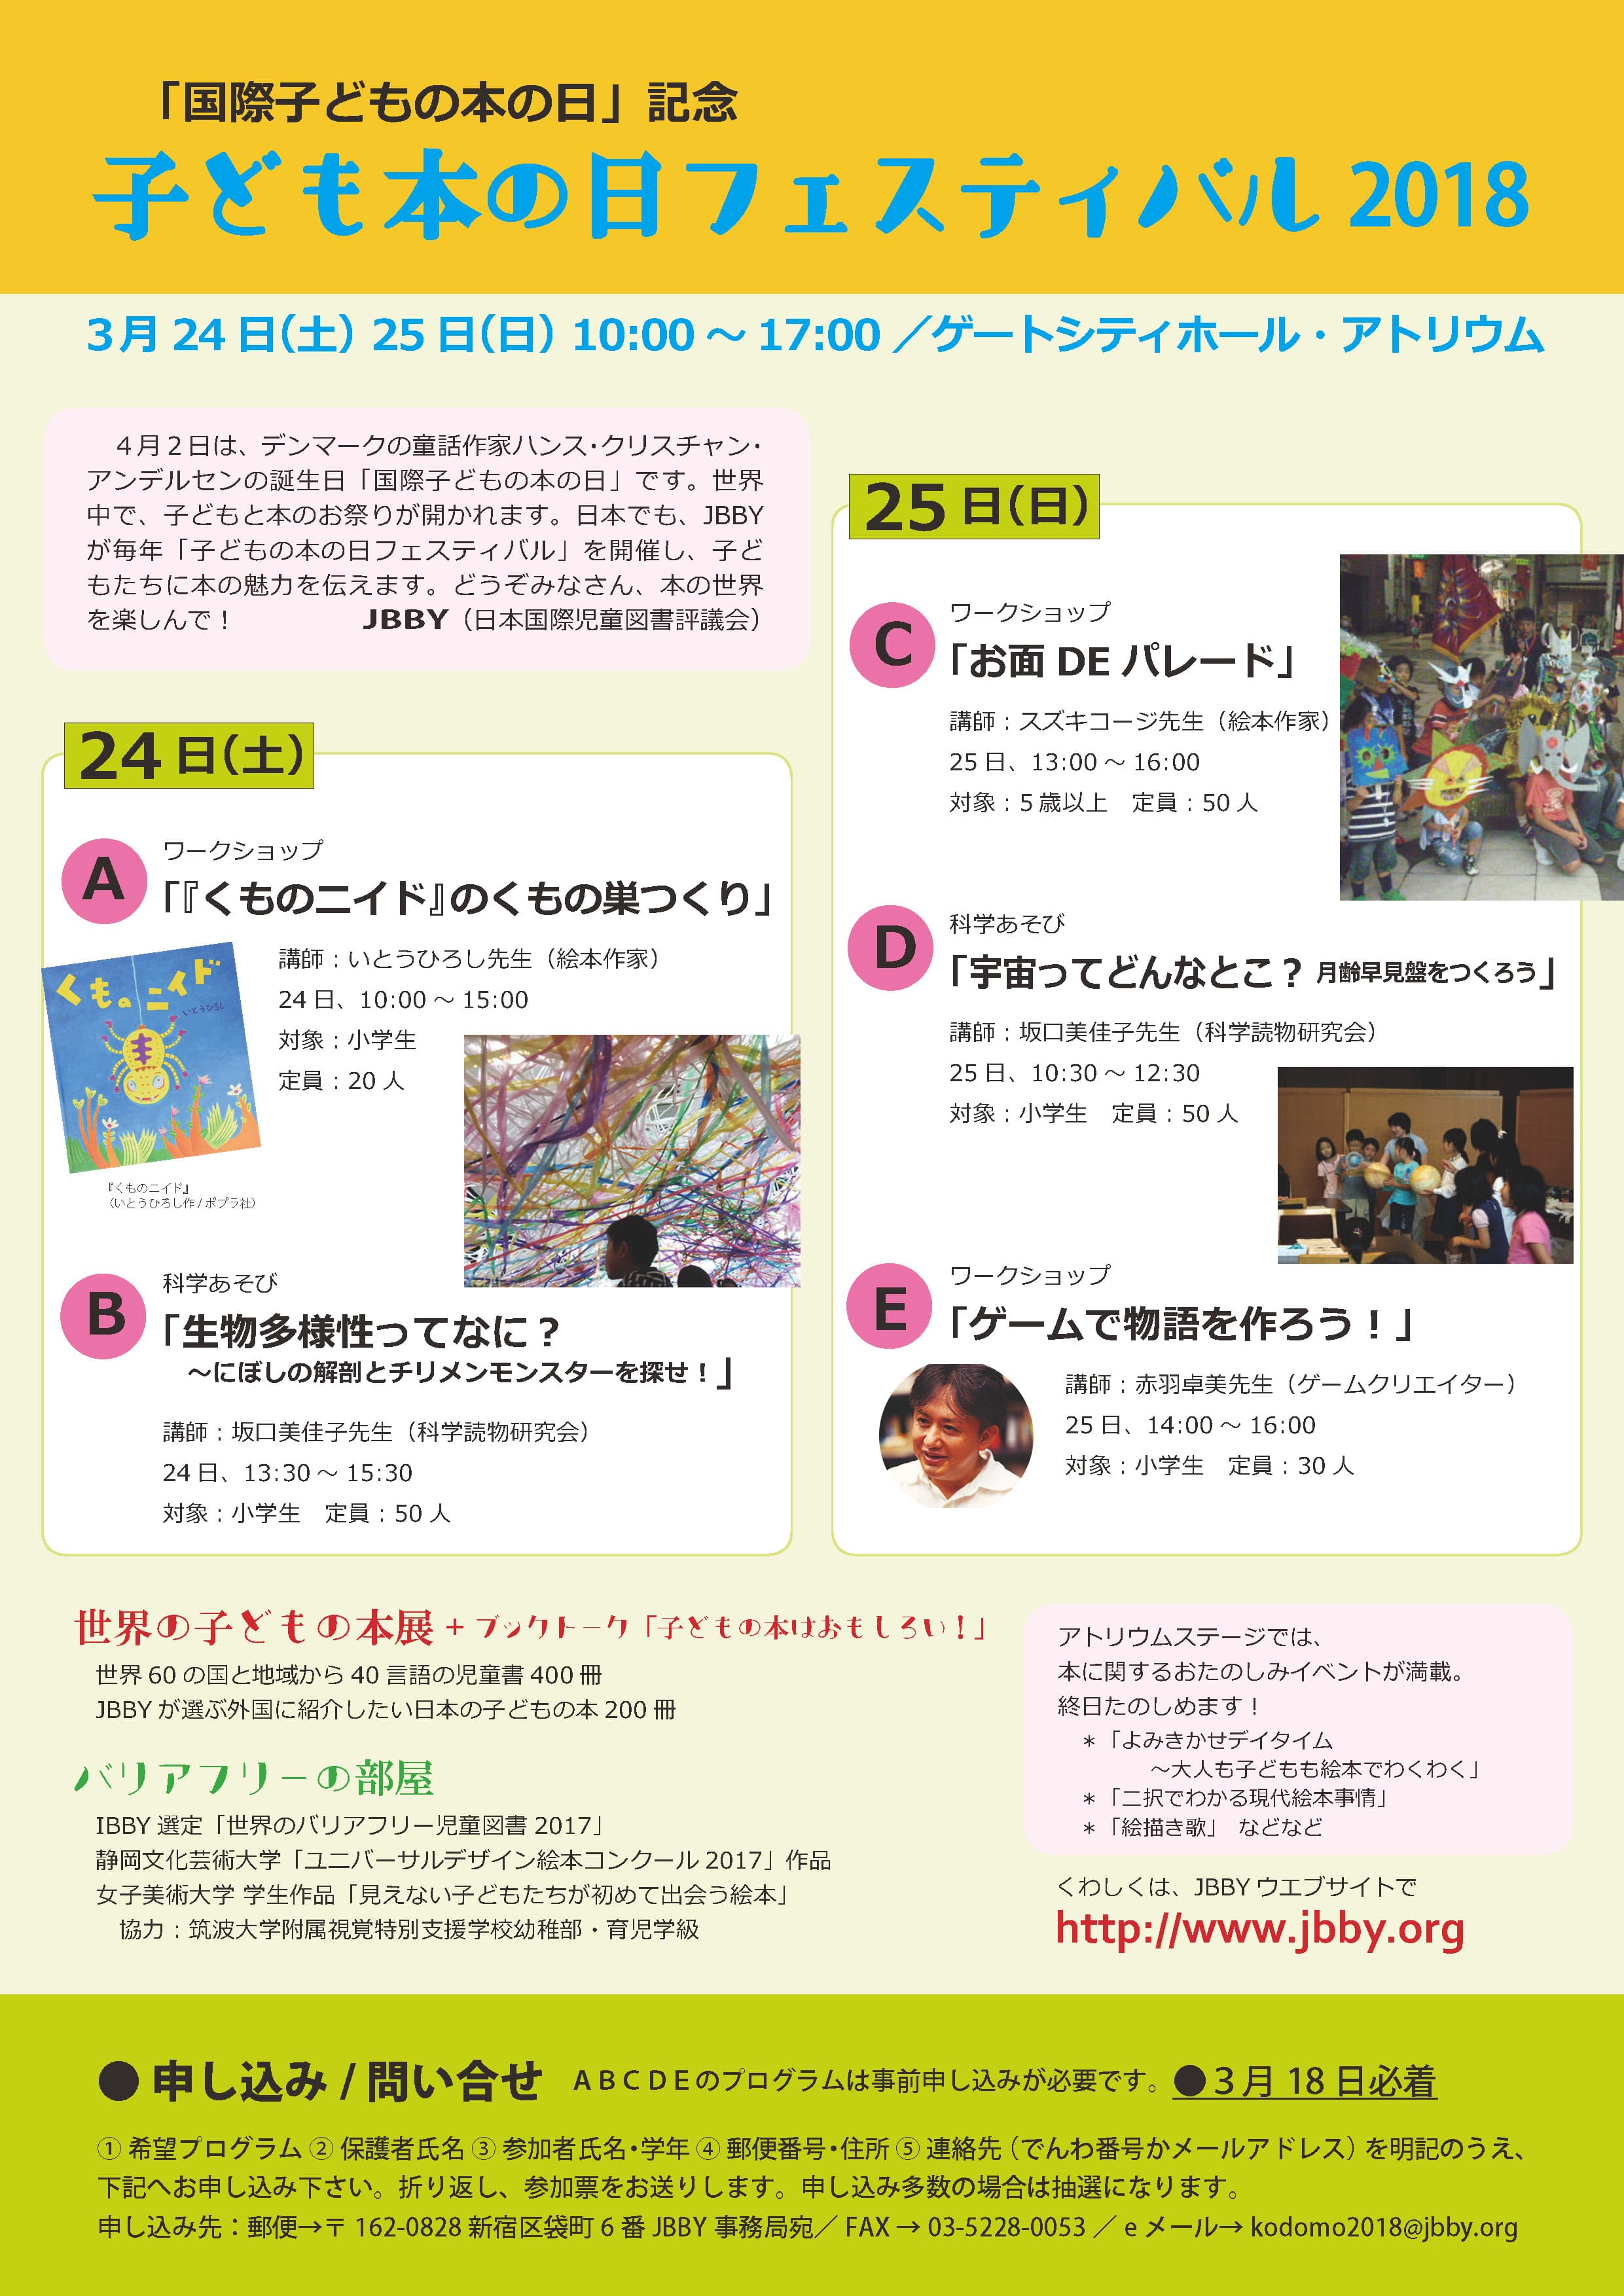 3月24日 土 25日 日 日本国際児童図書評議会主催 国際子どもの本の日記念 子どもの本フェスティバル18で女子美術大学学生制作 見えない子どもたちが始めて出会う絵本 などの展示を行います バリアフリー絵本